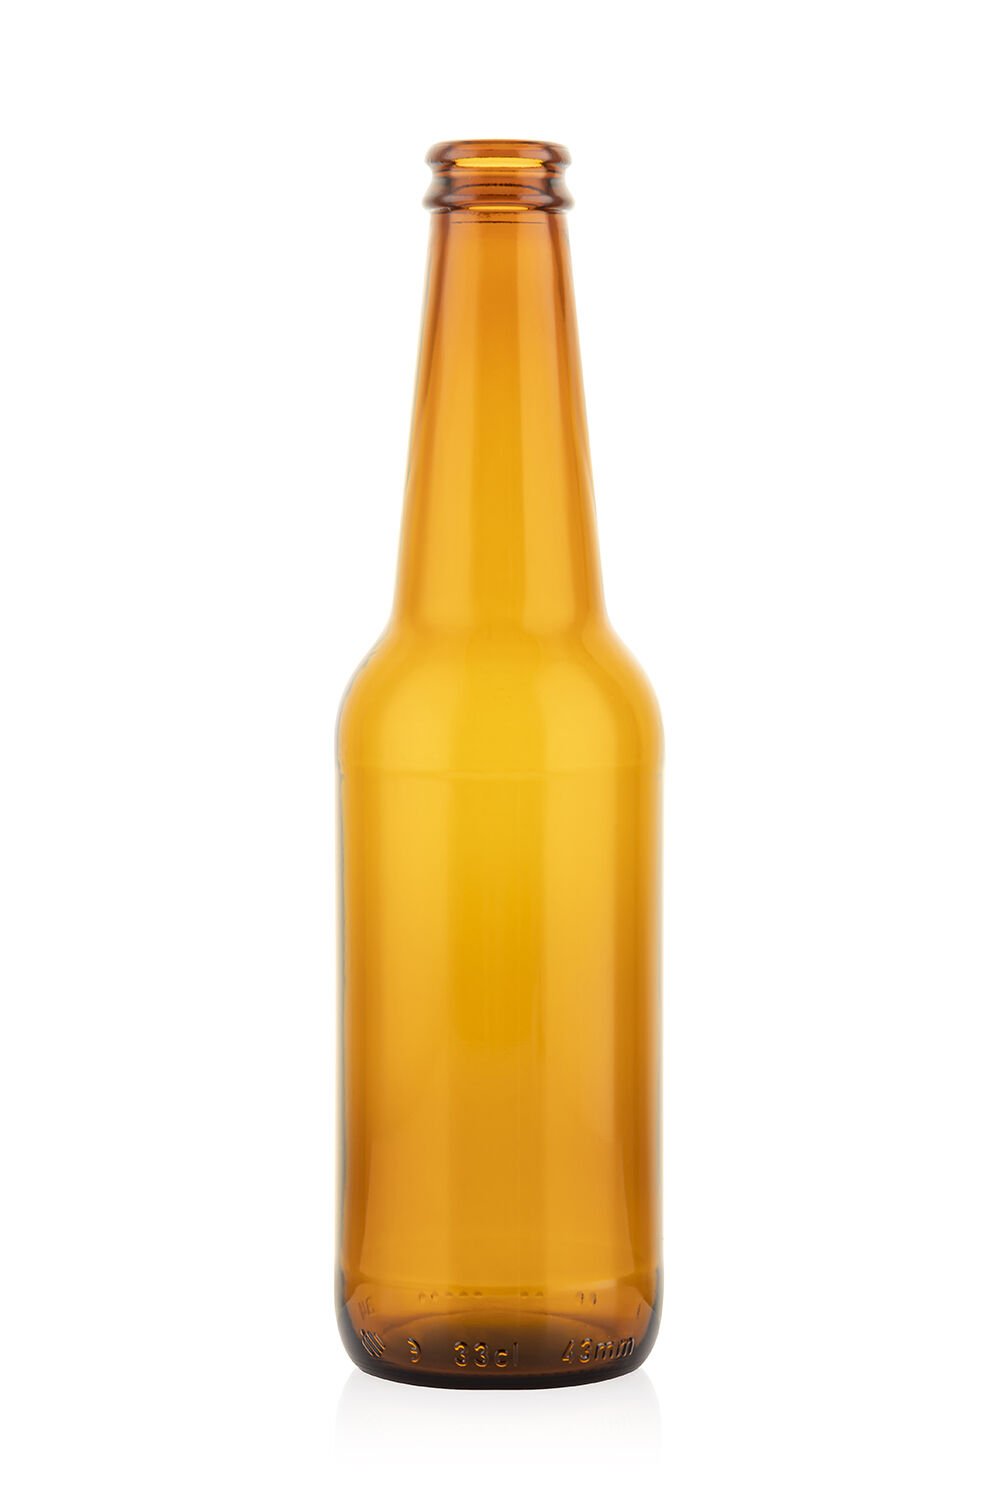 Long Neck Bira Şişesi - 33 cl - 35 adet